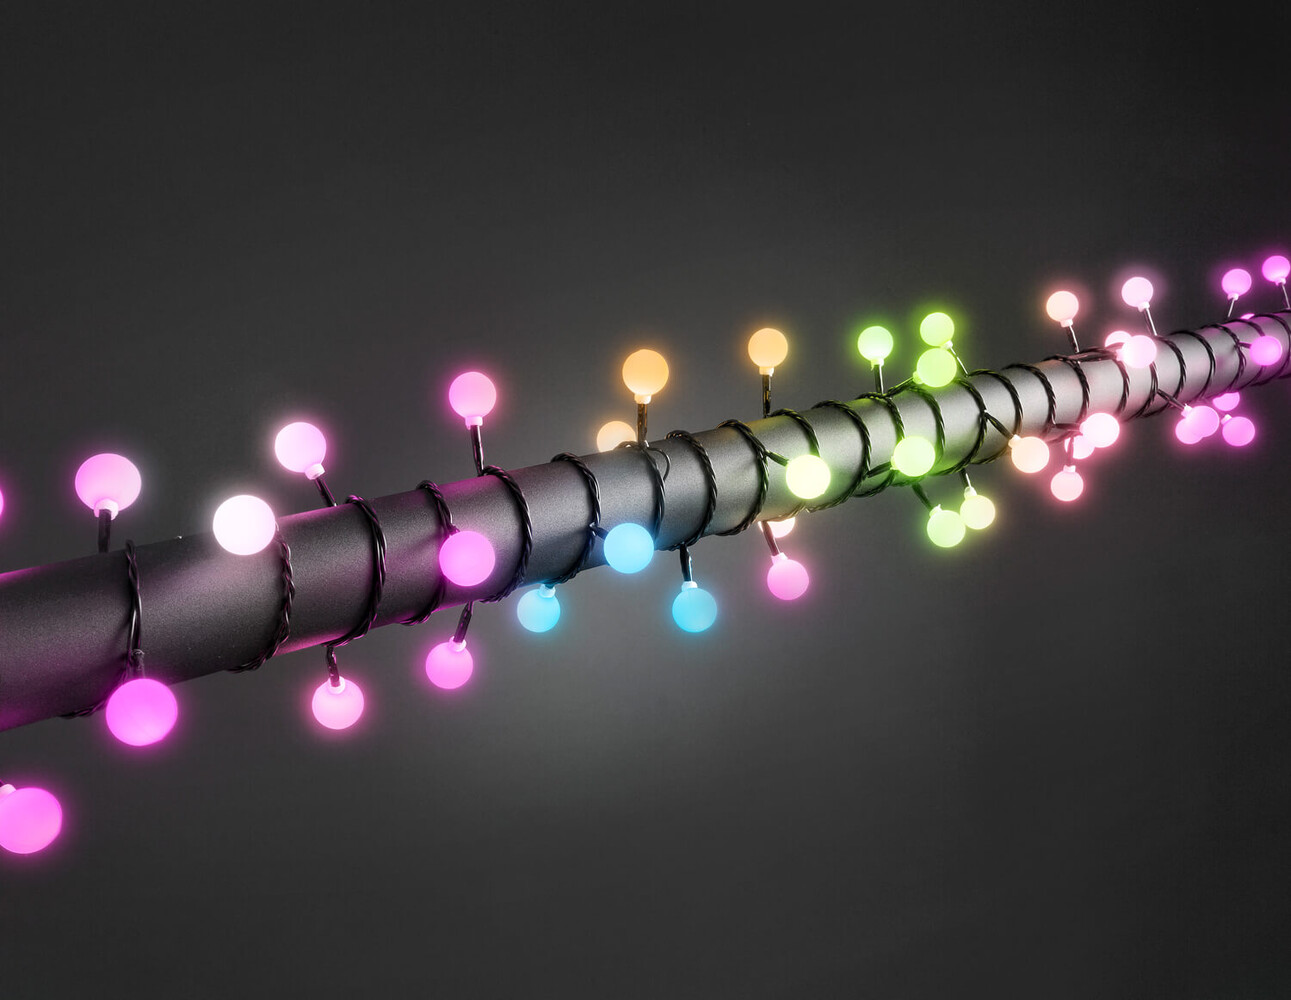 Farbenfrohe LED Globelichterkette von Konstsmide mit großzügigem Farbwechsel und eindrucksvollen RGB Dioden